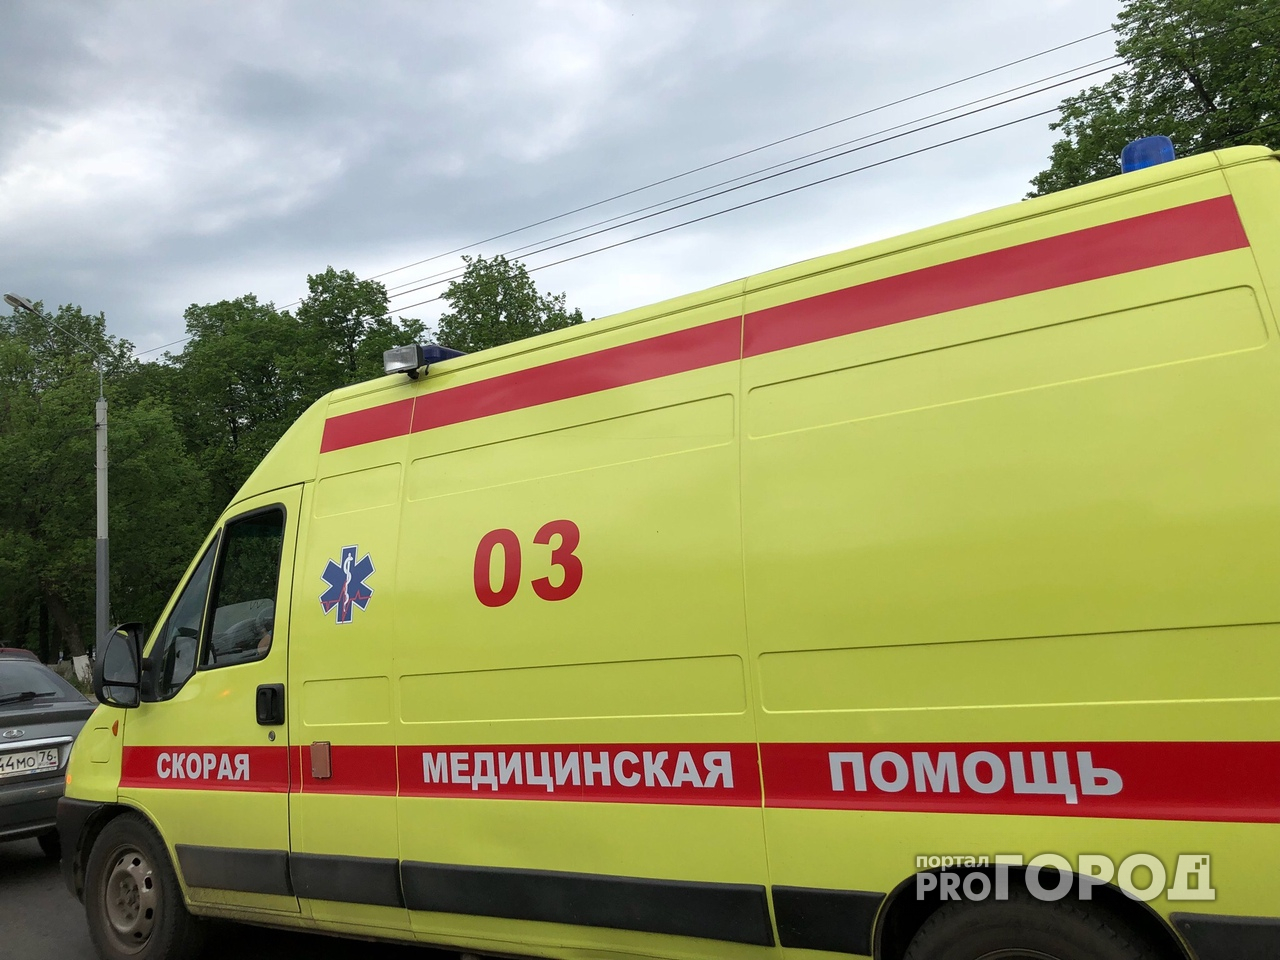 Под Ярославлем водитель иномарки насмерть сбил ребенка и скрылся: подробности